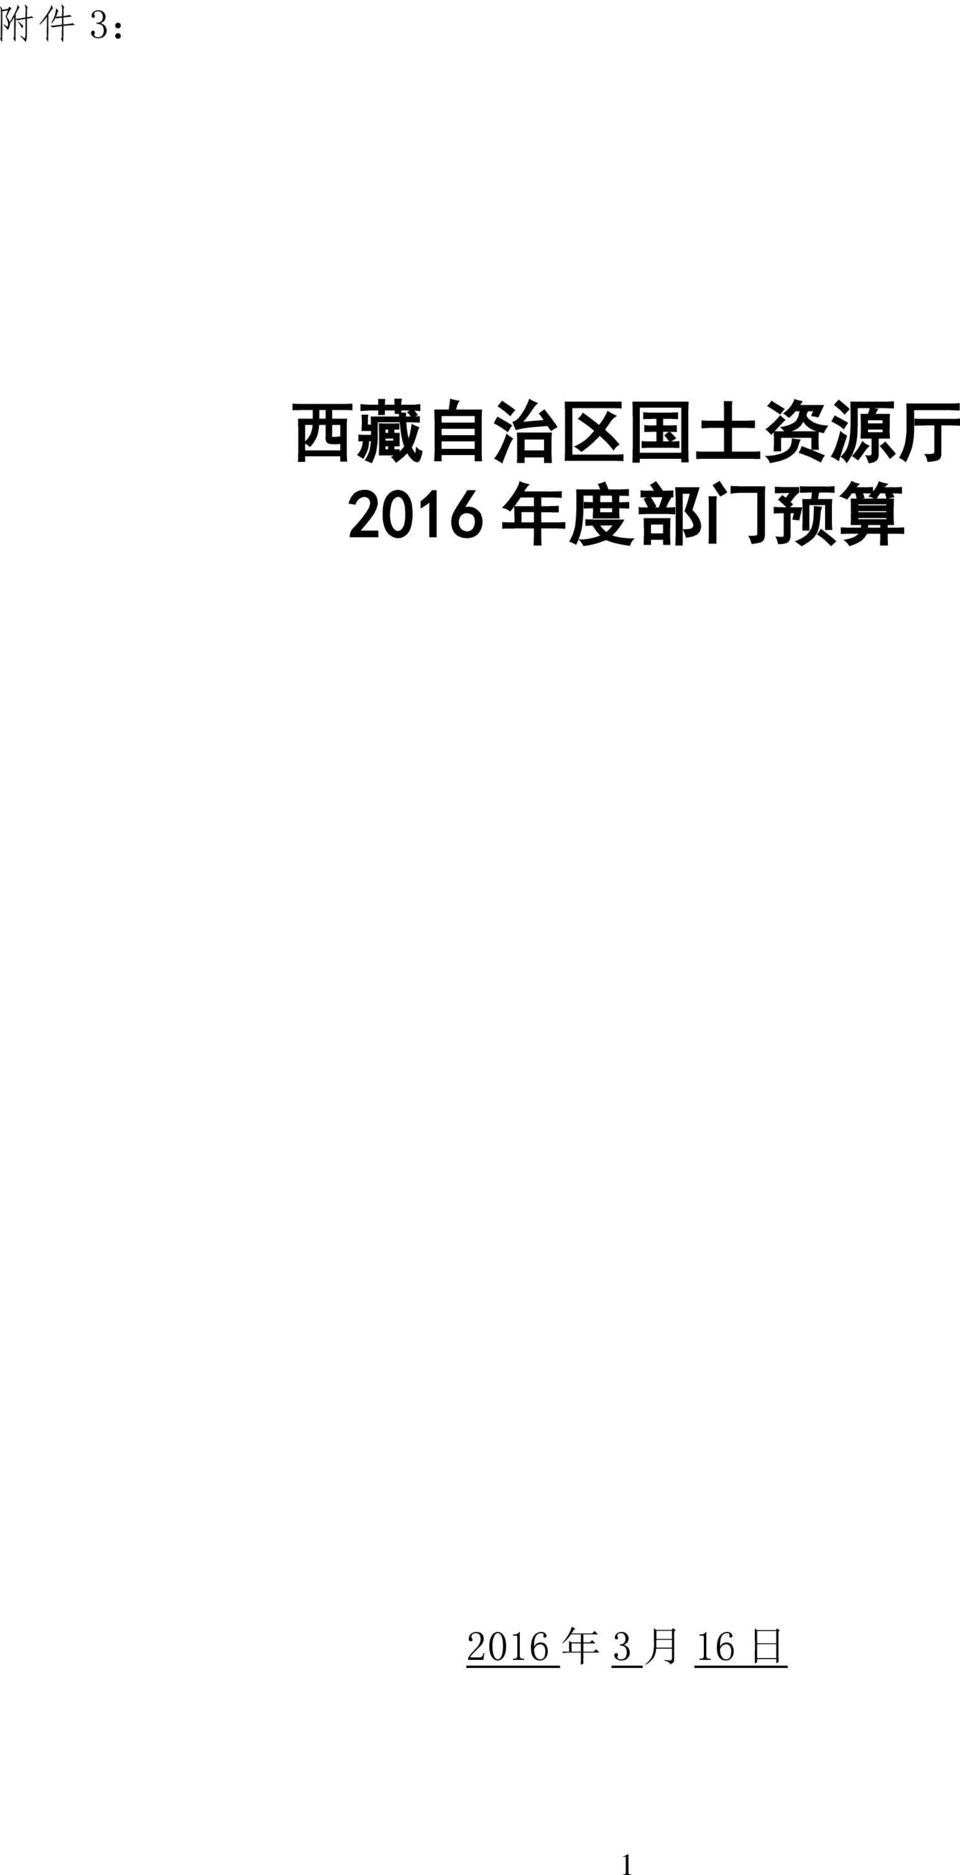 2016 年 度 部 门 预